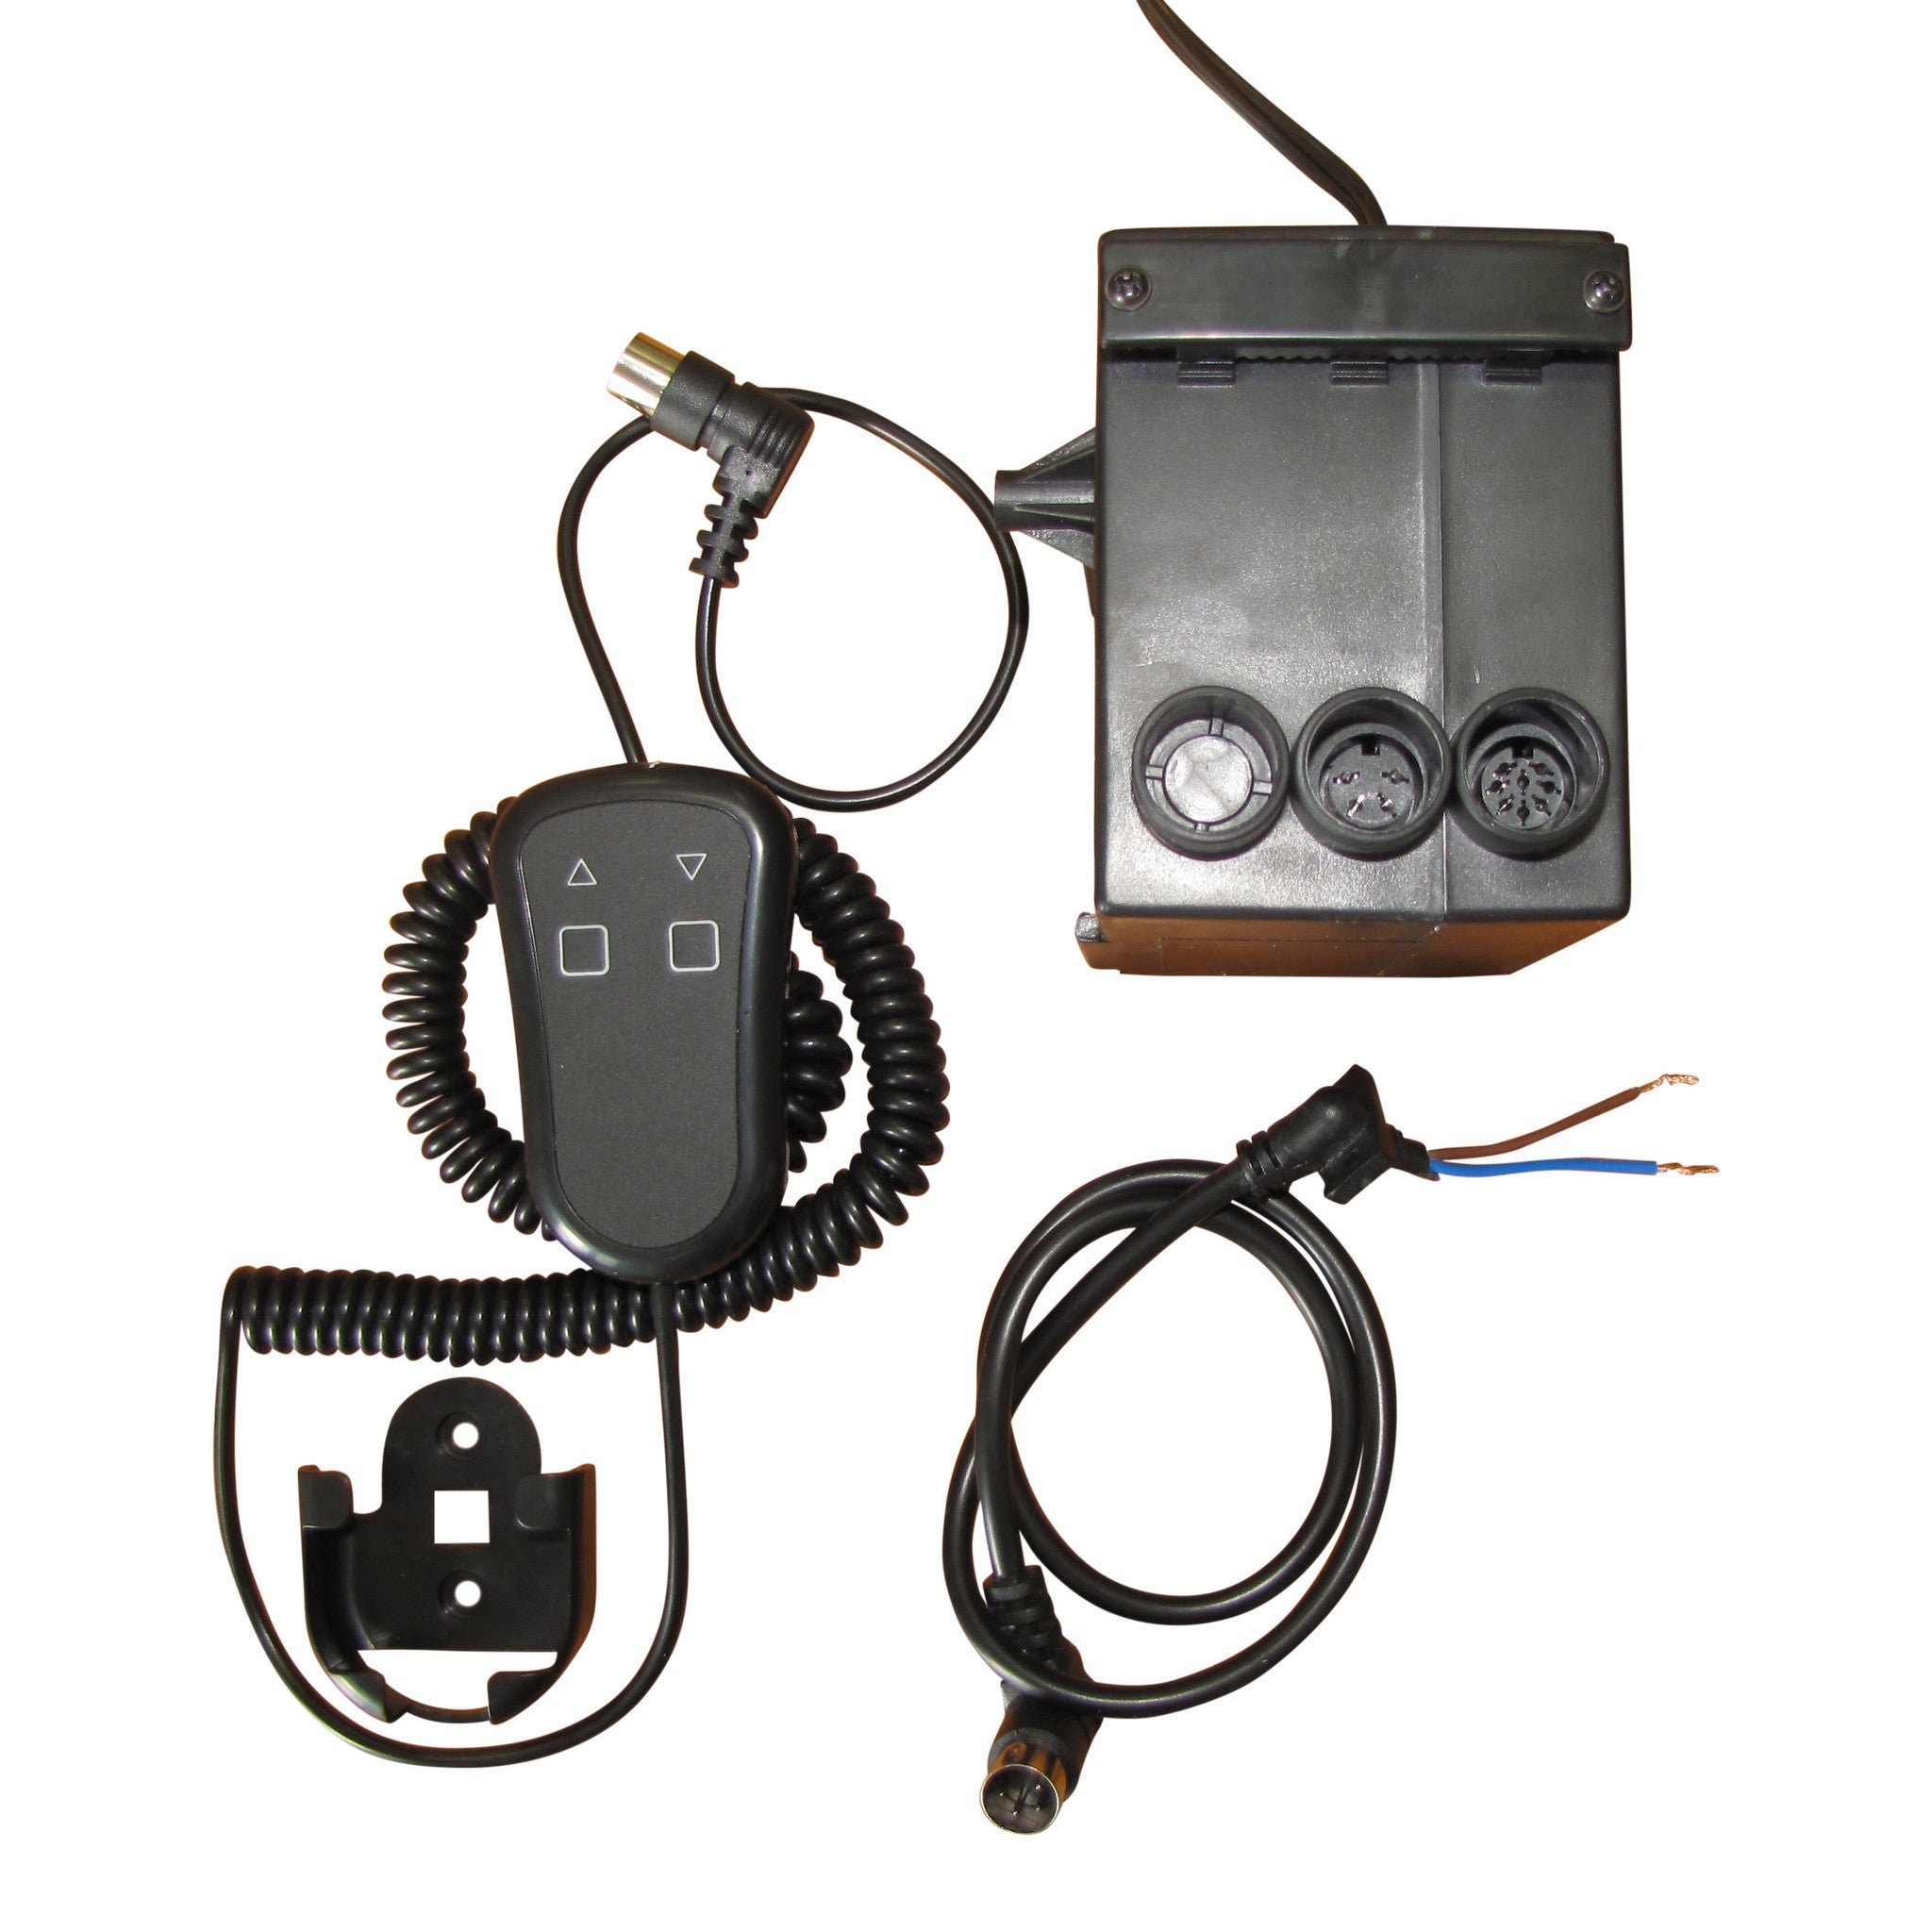 Sistema de controle com fio portátil para atuadores - CSPs Product Image